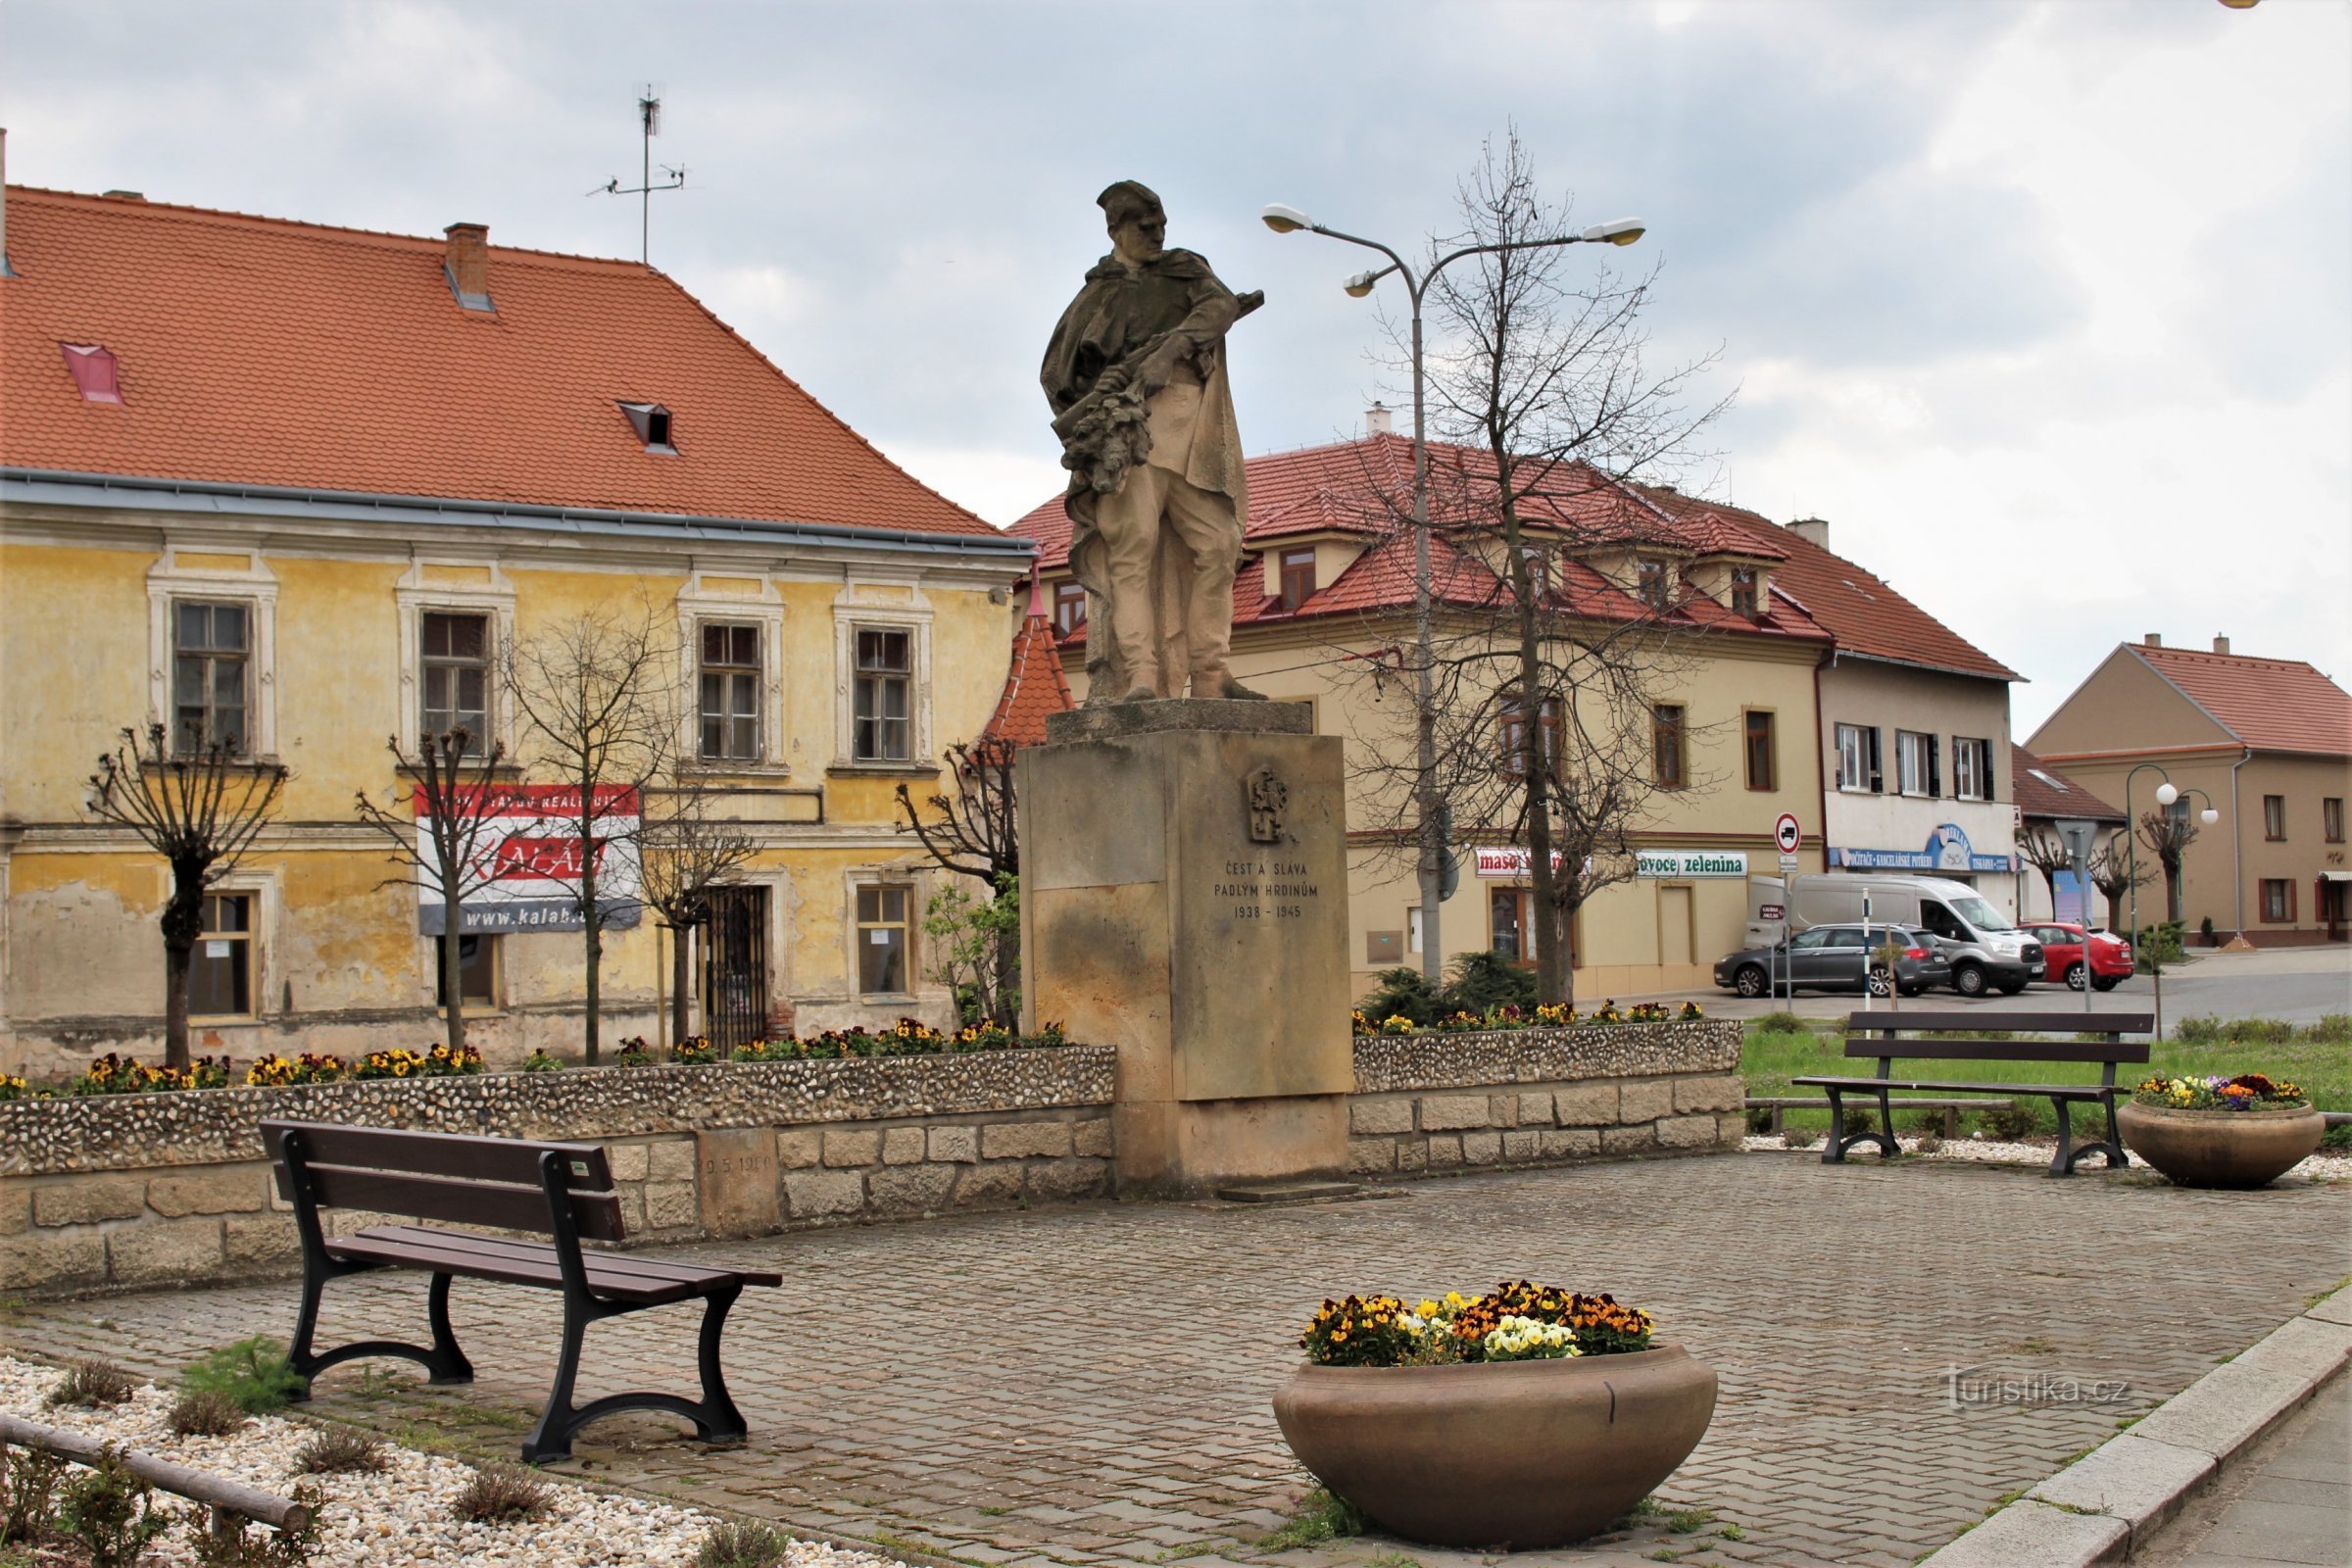 Trg svobode z dominantnim kipom Rudoarmejca